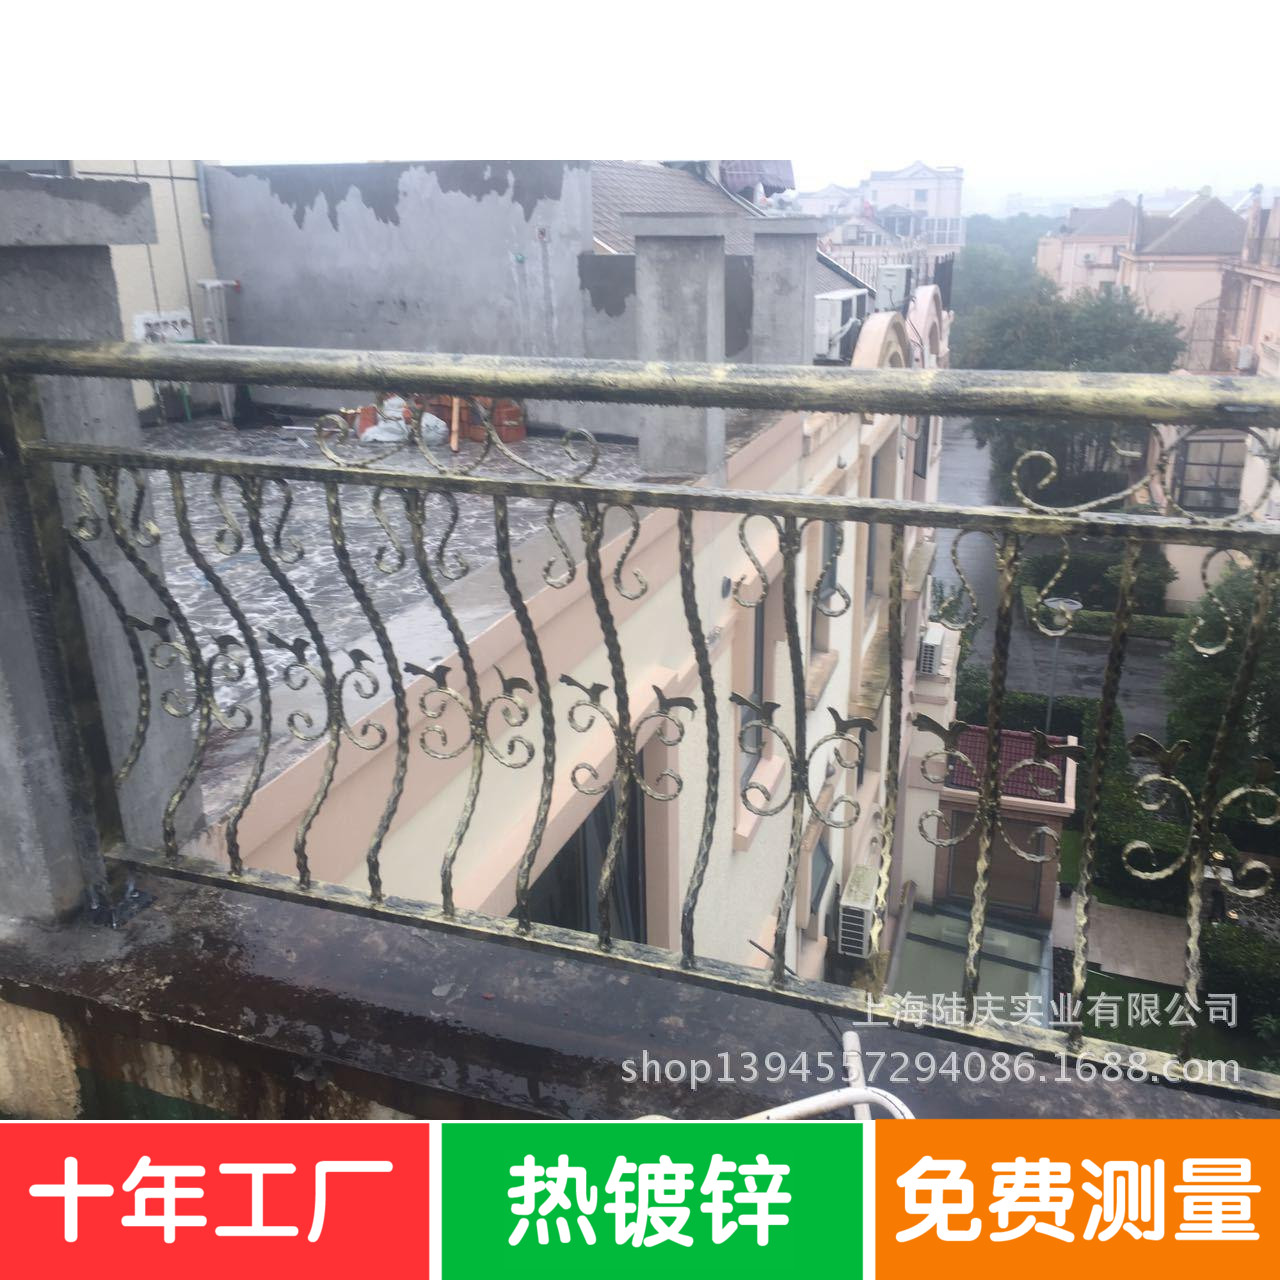 上海十年工厂铁艺及不锈钢护栏围栏阳台栏杆加工定制门窗楼梯扶手